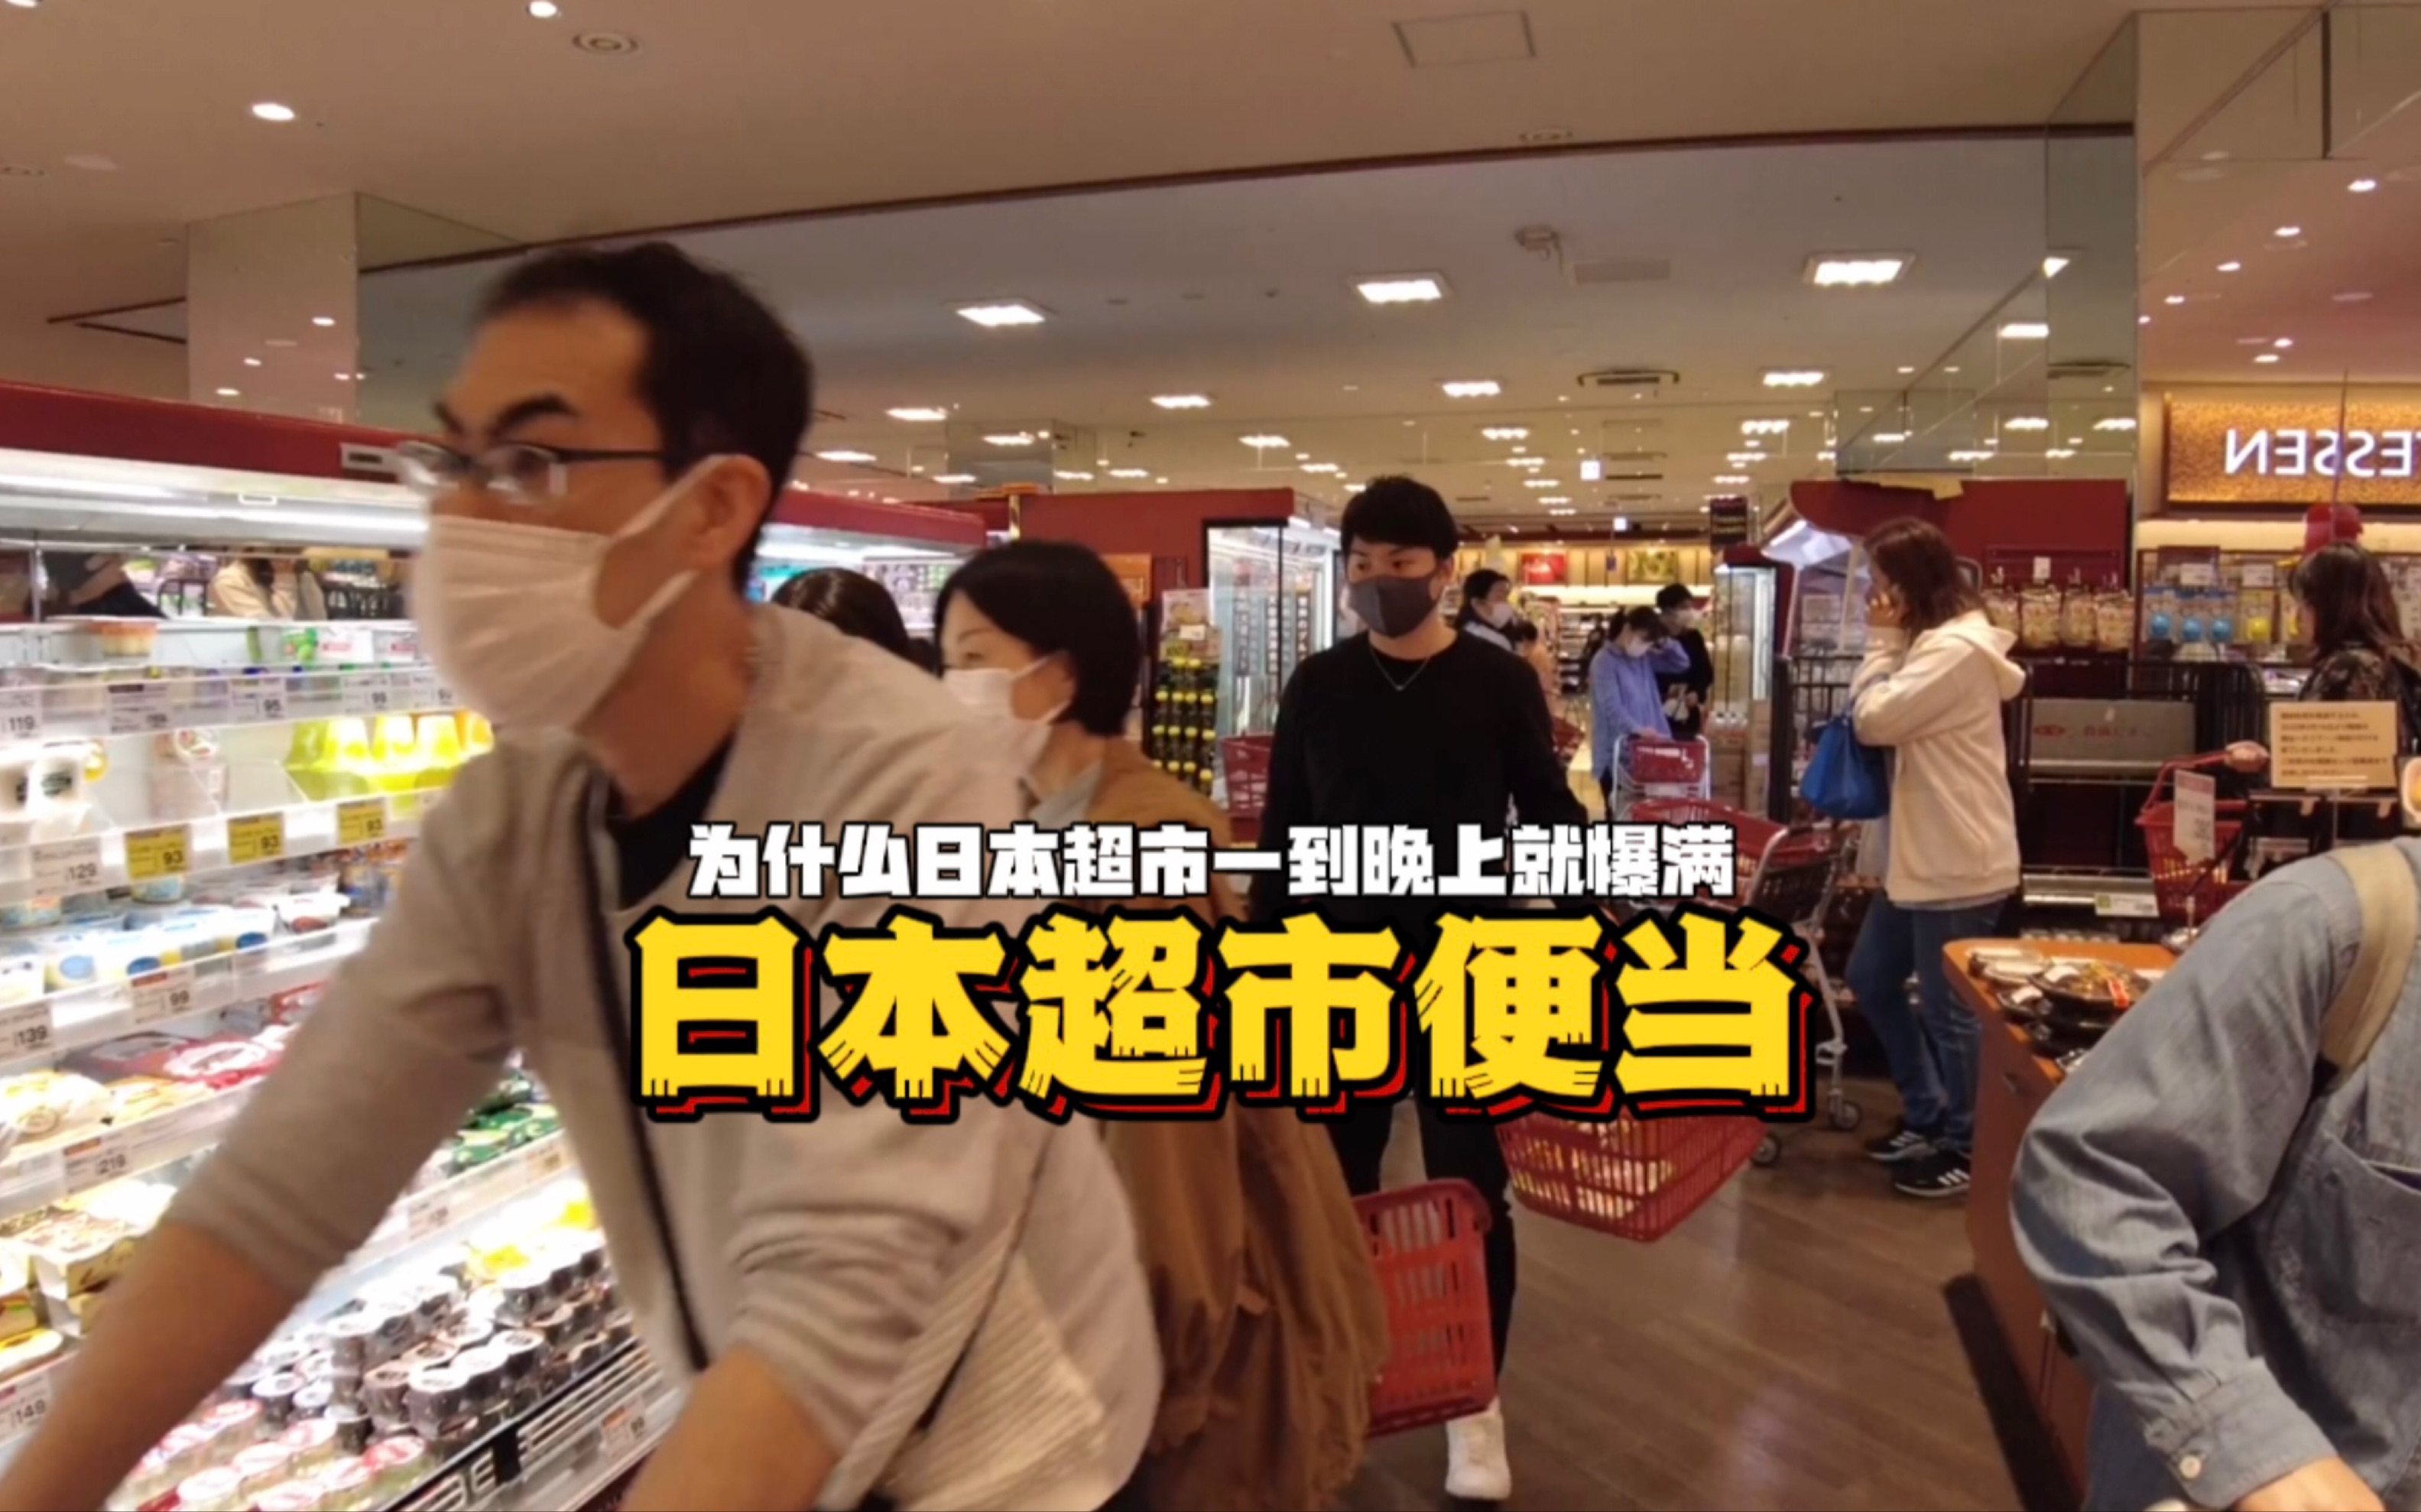 为什么日本超市一到晚上就爆满，原因竟然是因为穷？